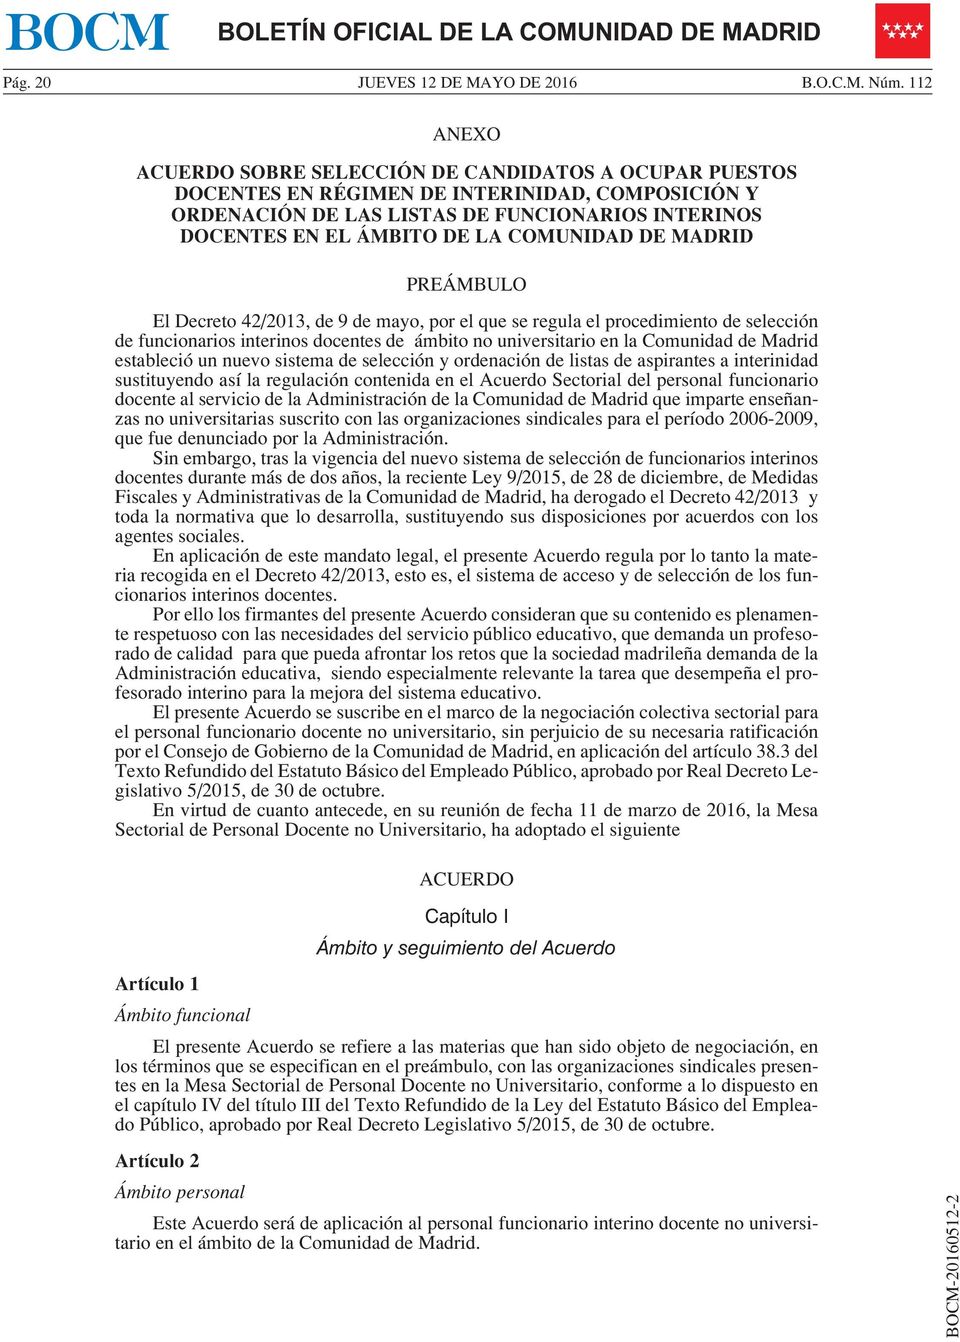 COMUNIDAD DE MADRID PREÁMBULO El Decreto 42/2013, de 9 de mayo, por el que se regula el procedimiento de selección de funcionarios interinos docentes de ámbito no universitario en la Comunidad de